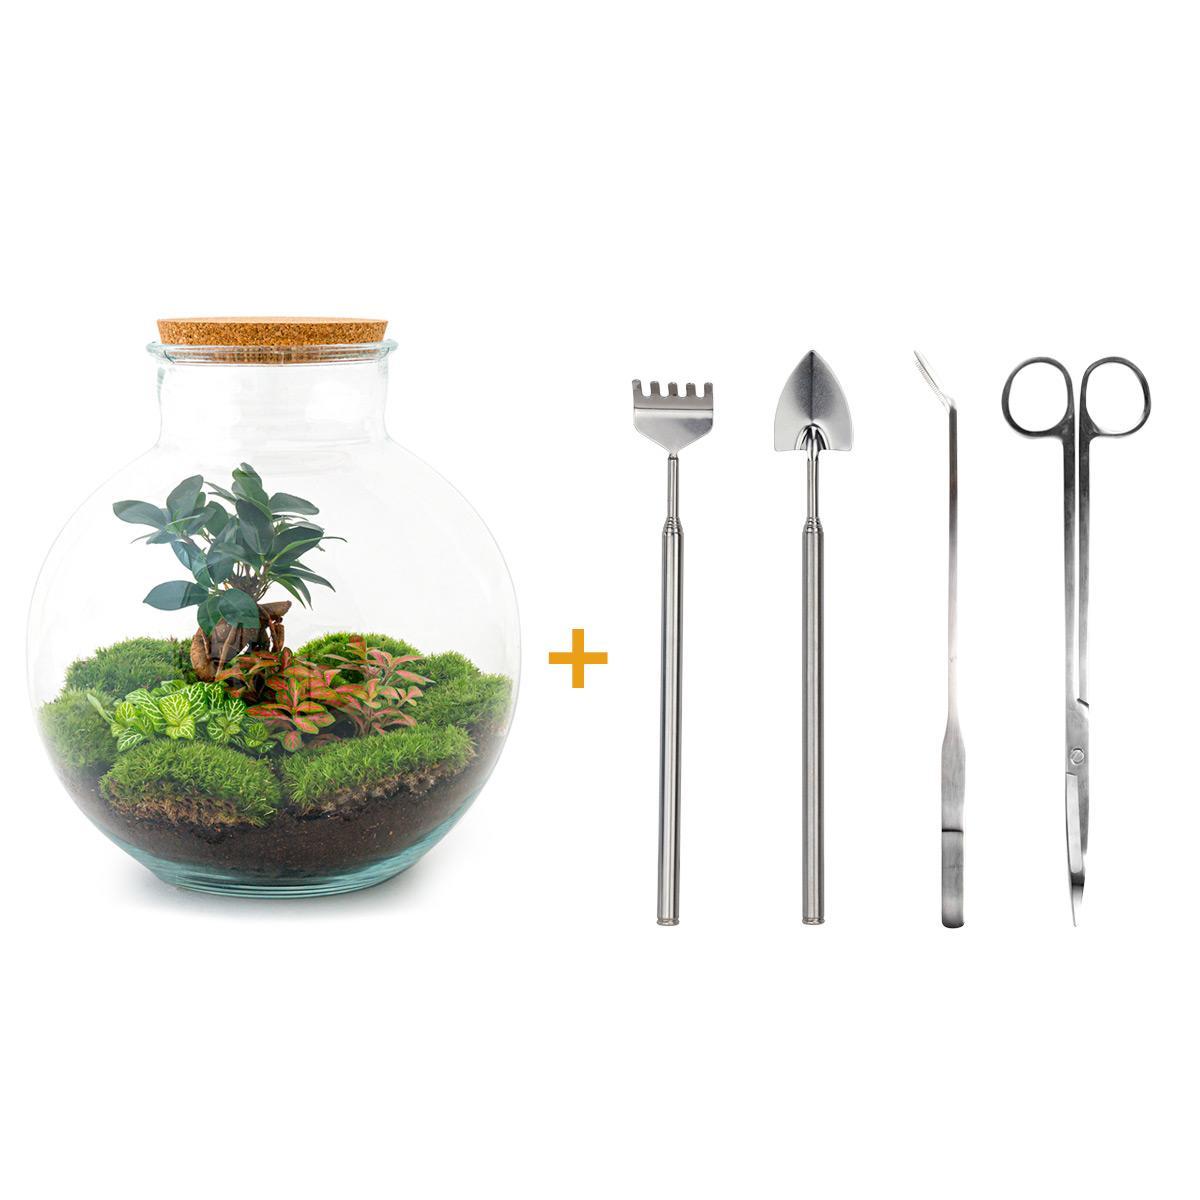 DIY terrarium - Bolder Bob Bonsai - ↑ 30 cm + Rake + Shovel + Tweezer + Scissors